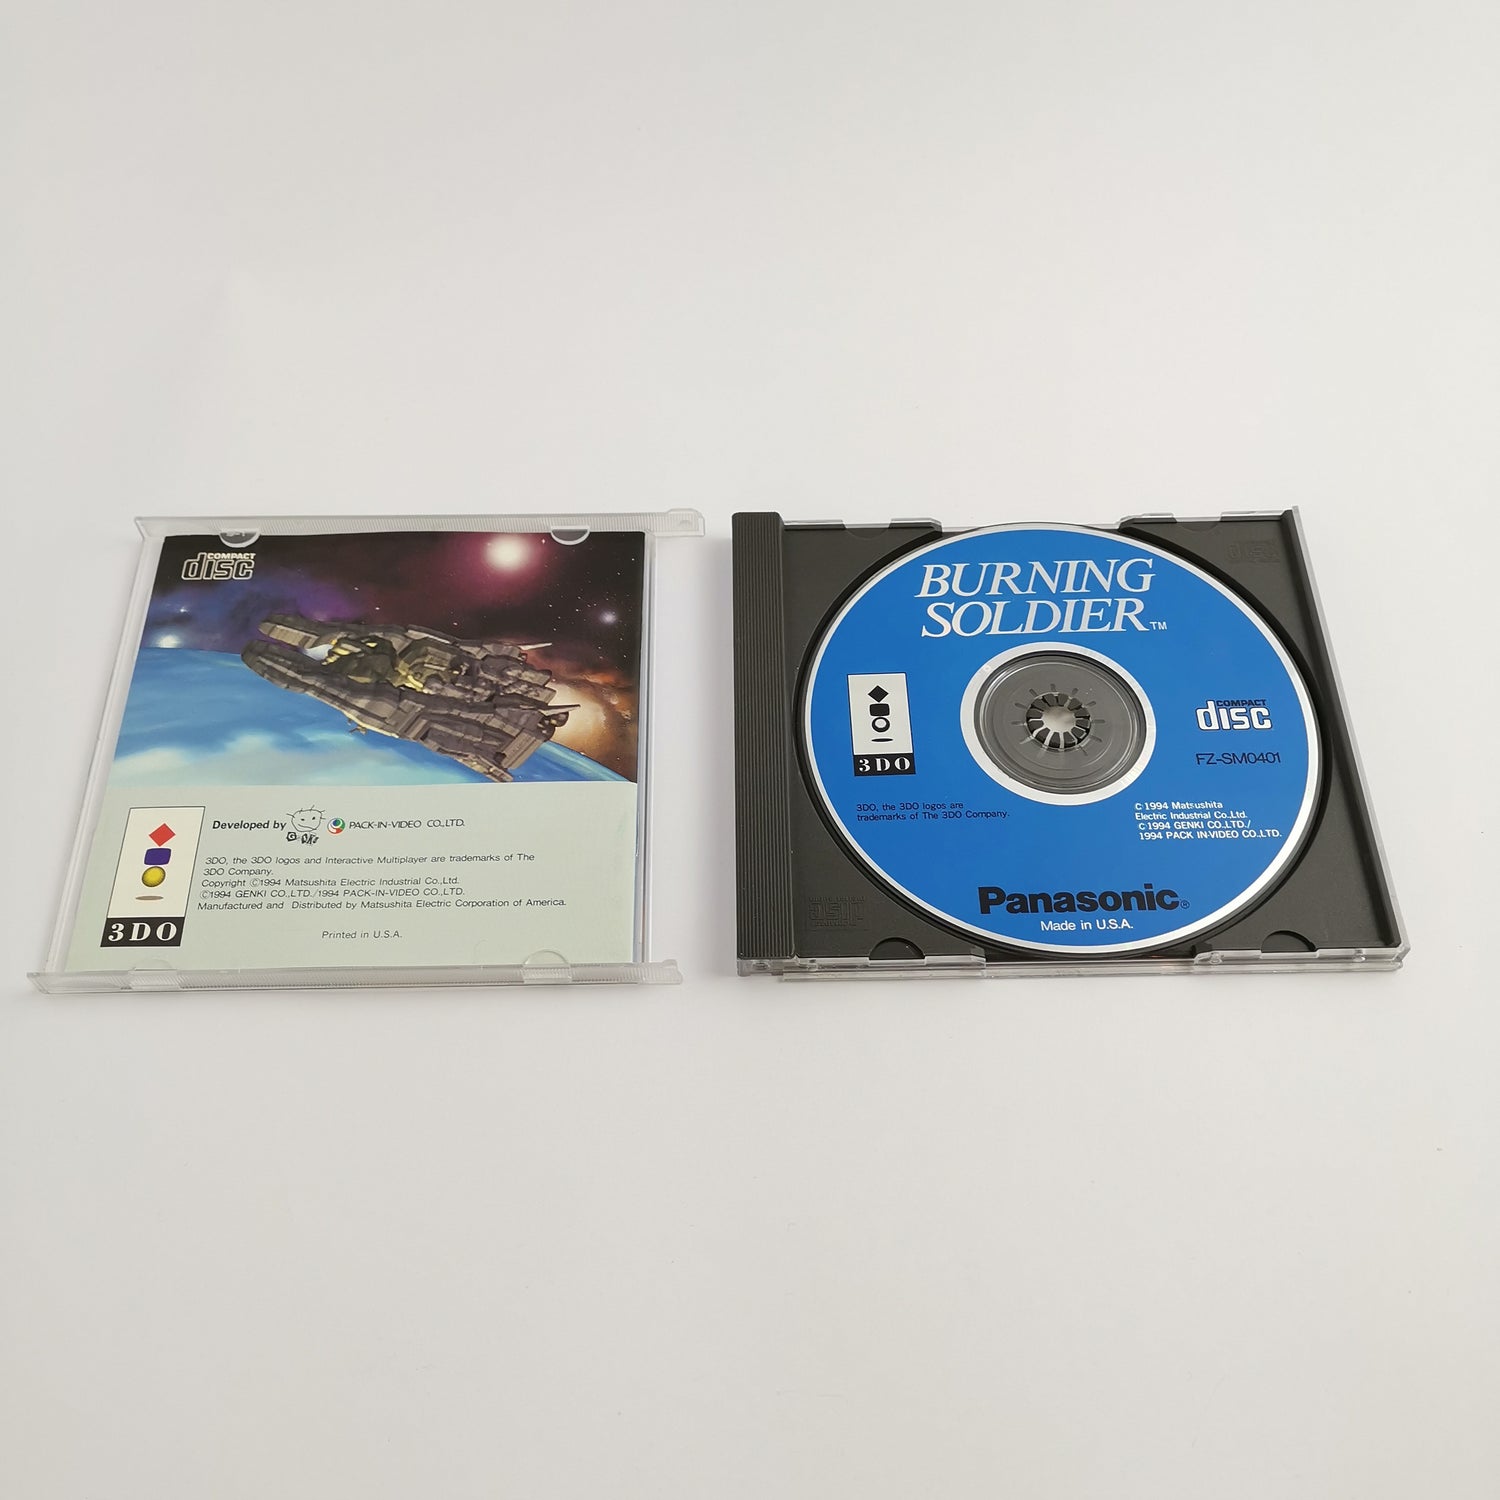 Panasonic 3DO game 